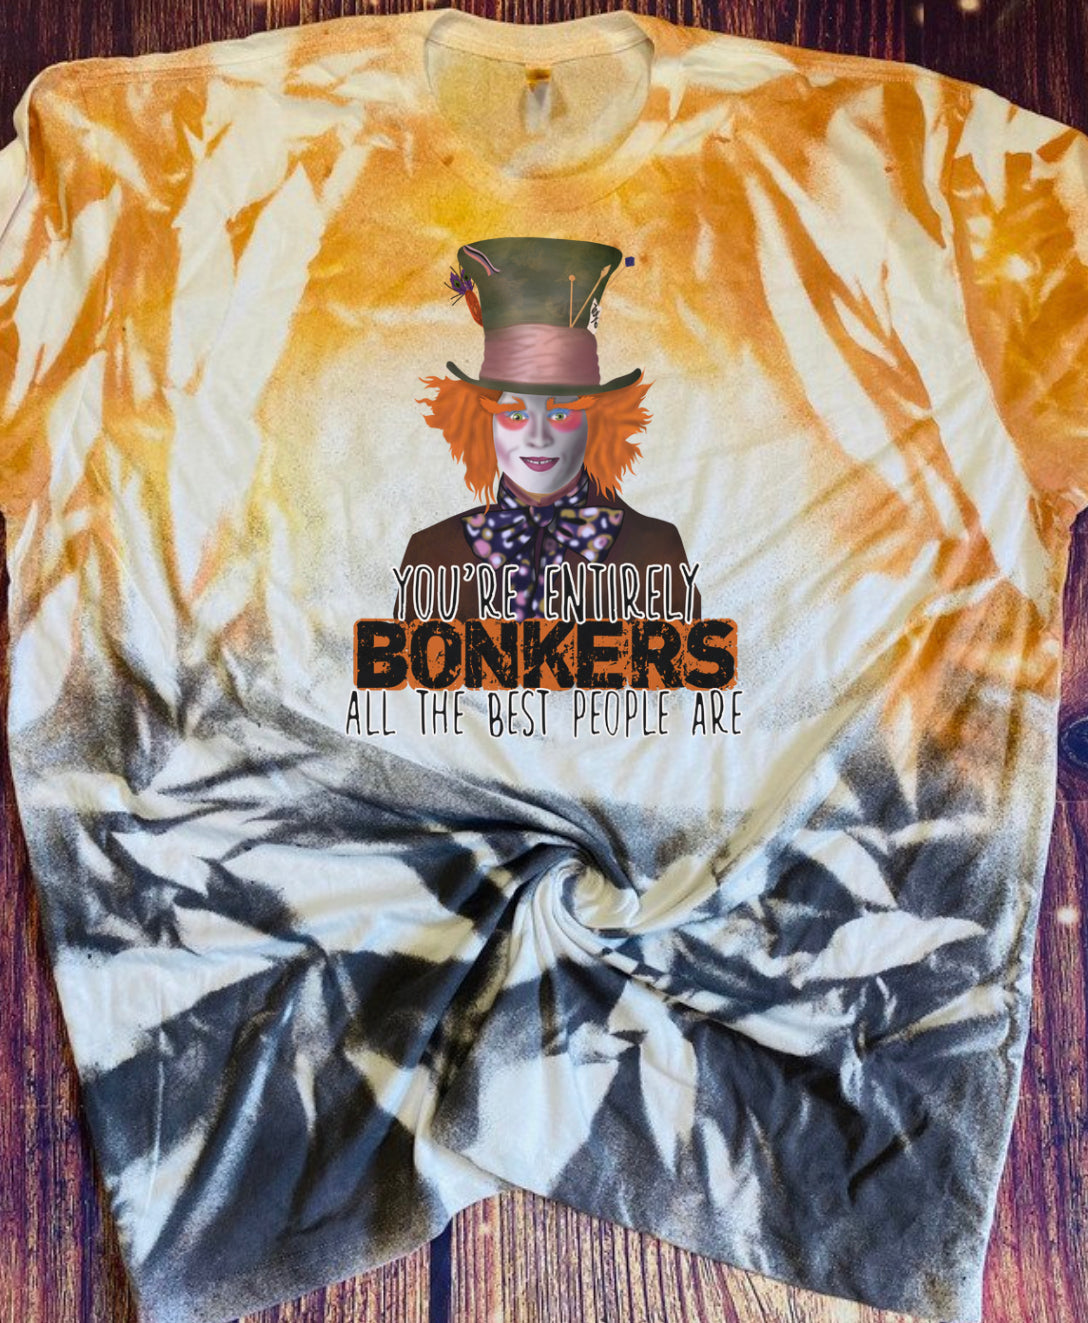 Bonkers Tie Dye tee